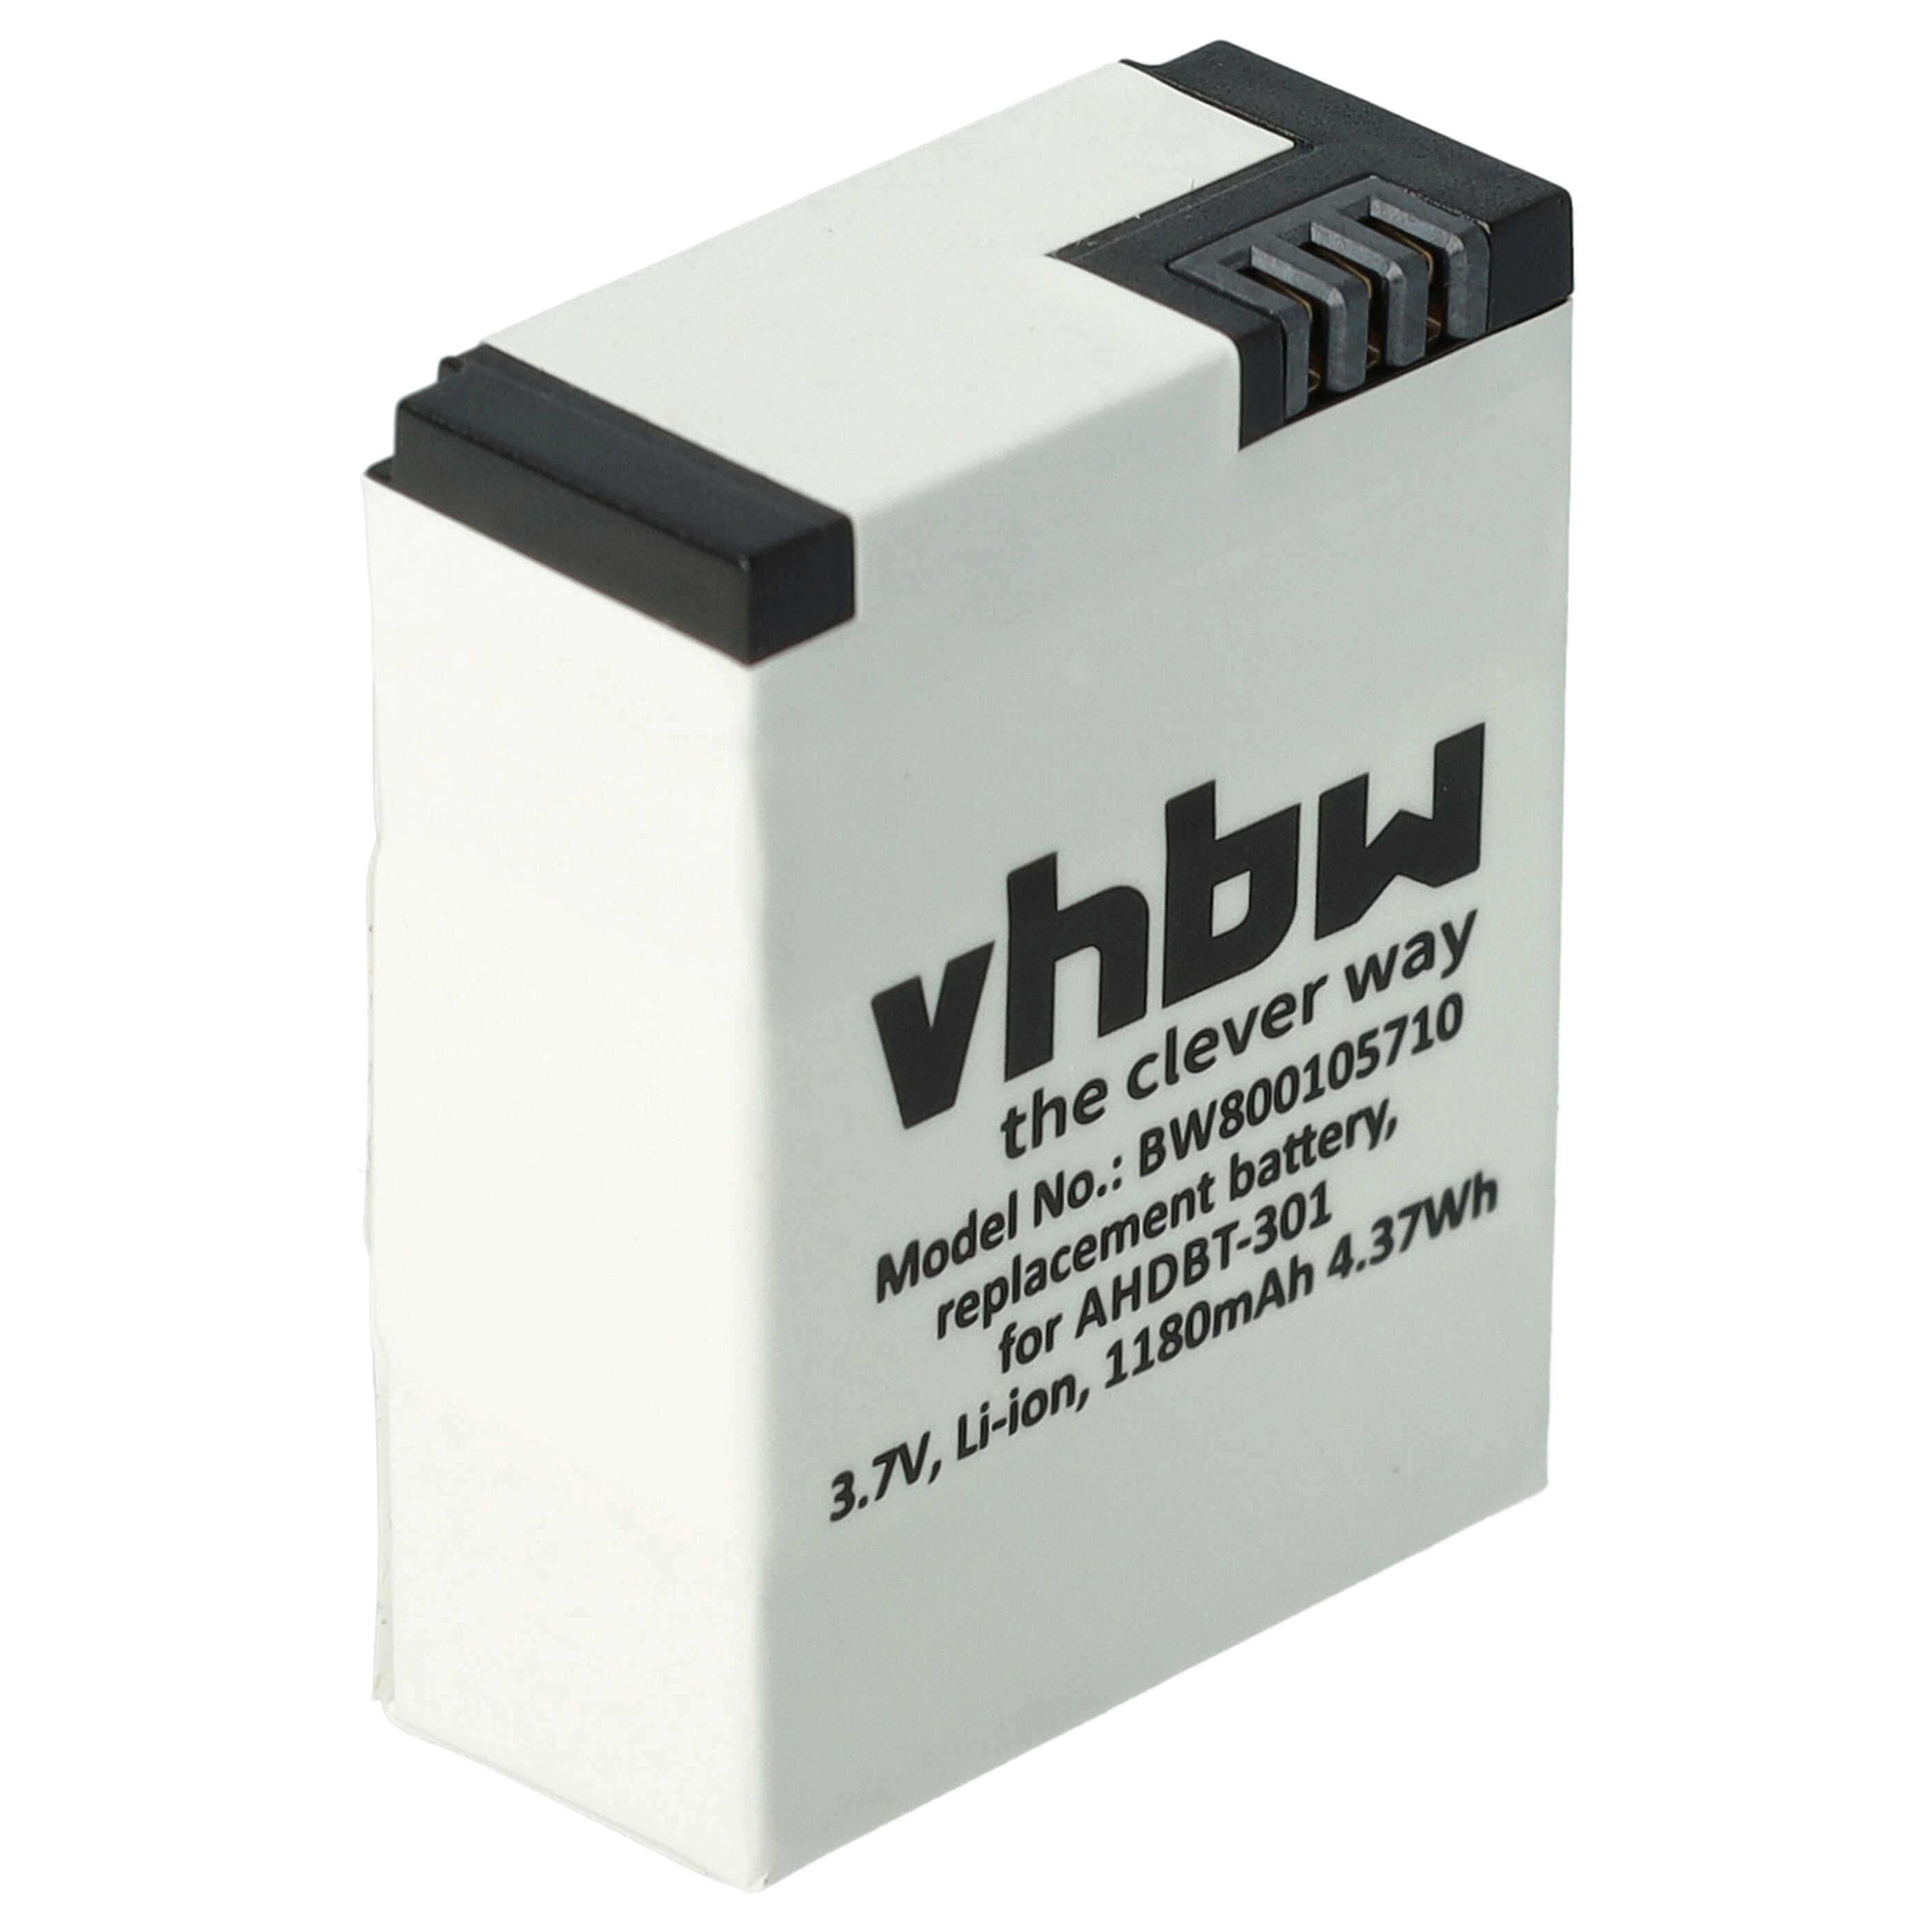 Batería reemplaza GoPro AHDBT-201 para videocámara - 1180 mAh, 3,7 V